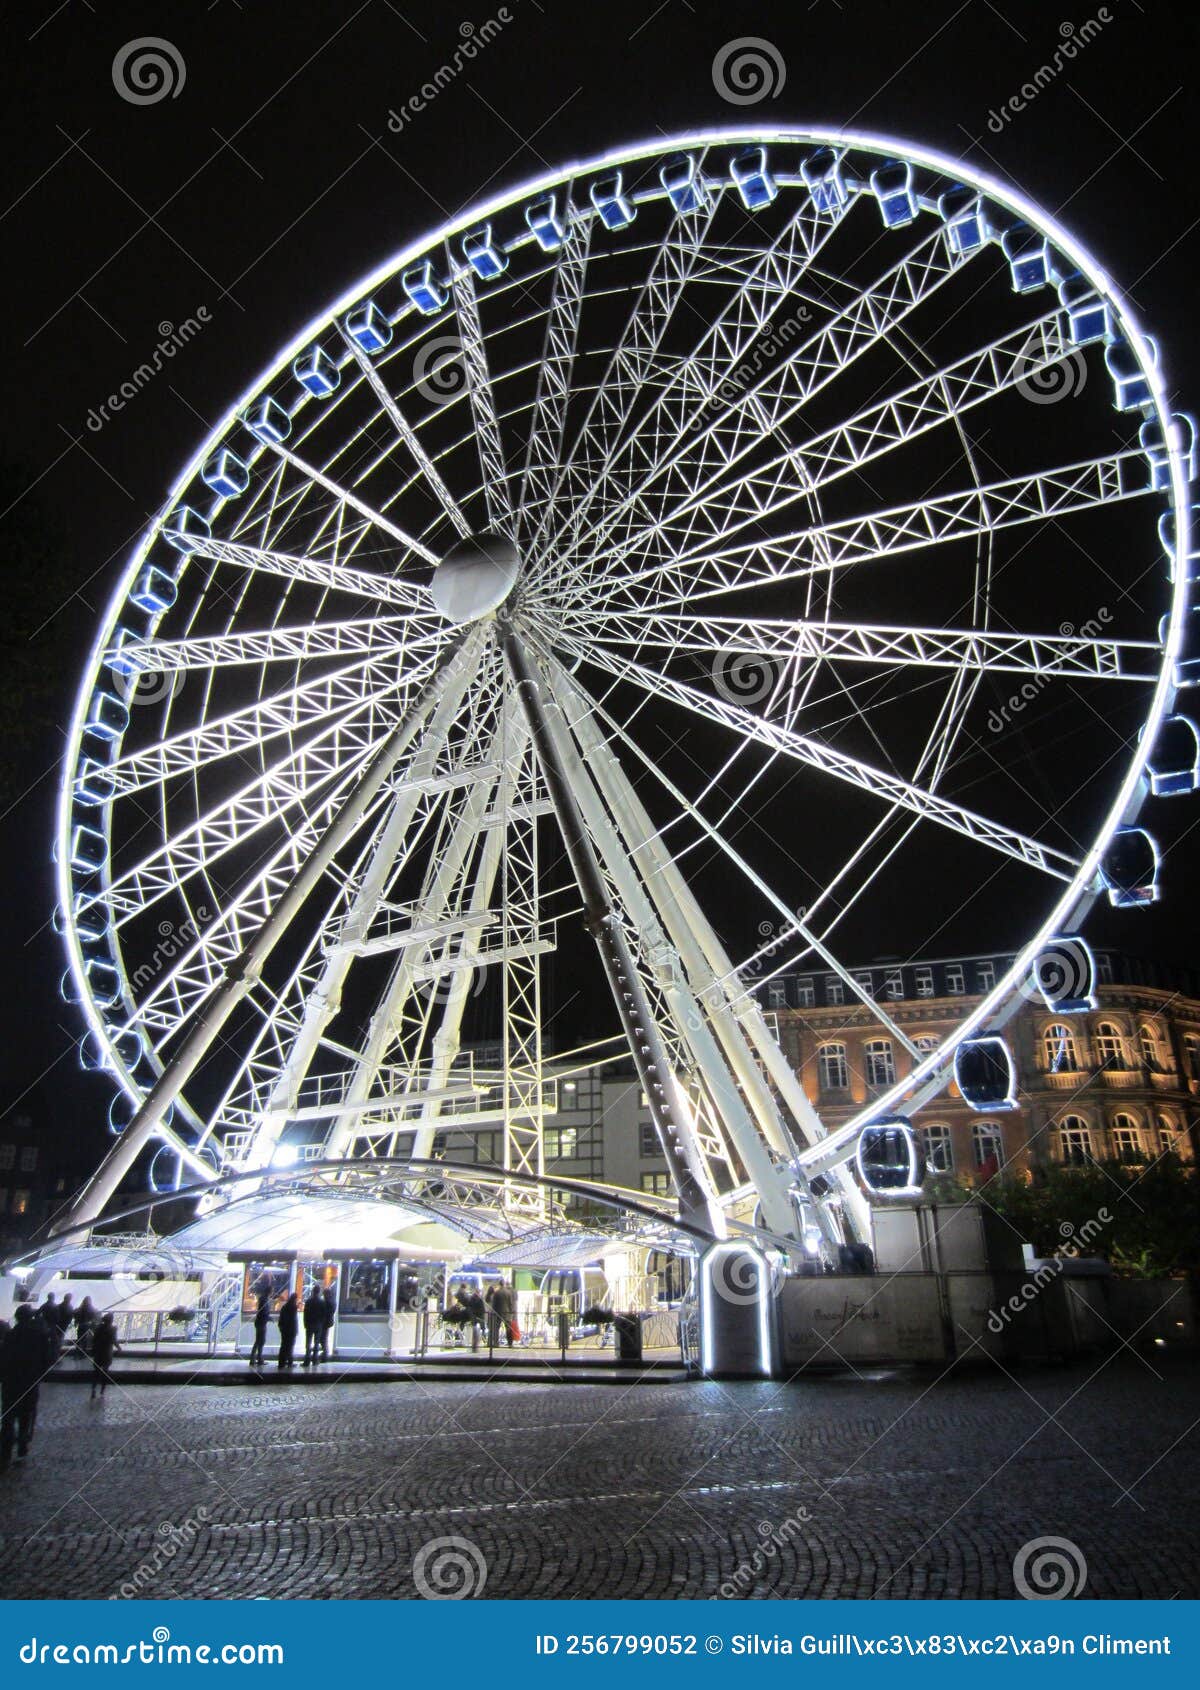 illuminated fairground wheel on a cold night